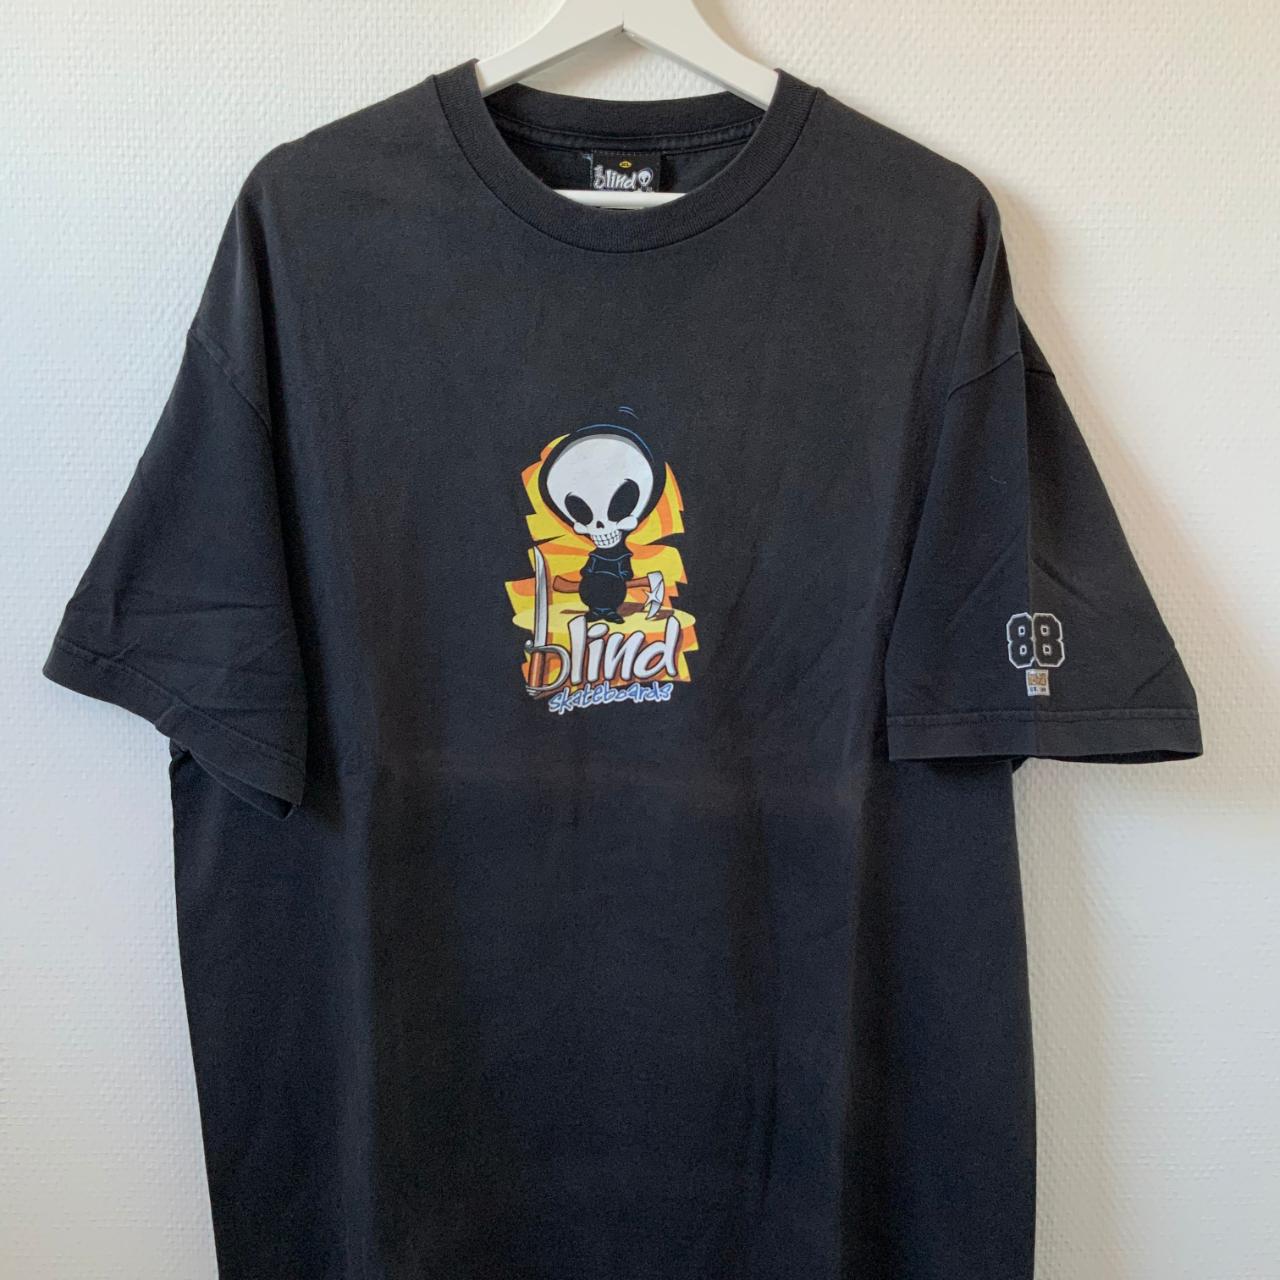 Vintage Blind skateboard t-shirt Ronnie Creager Made - Depop